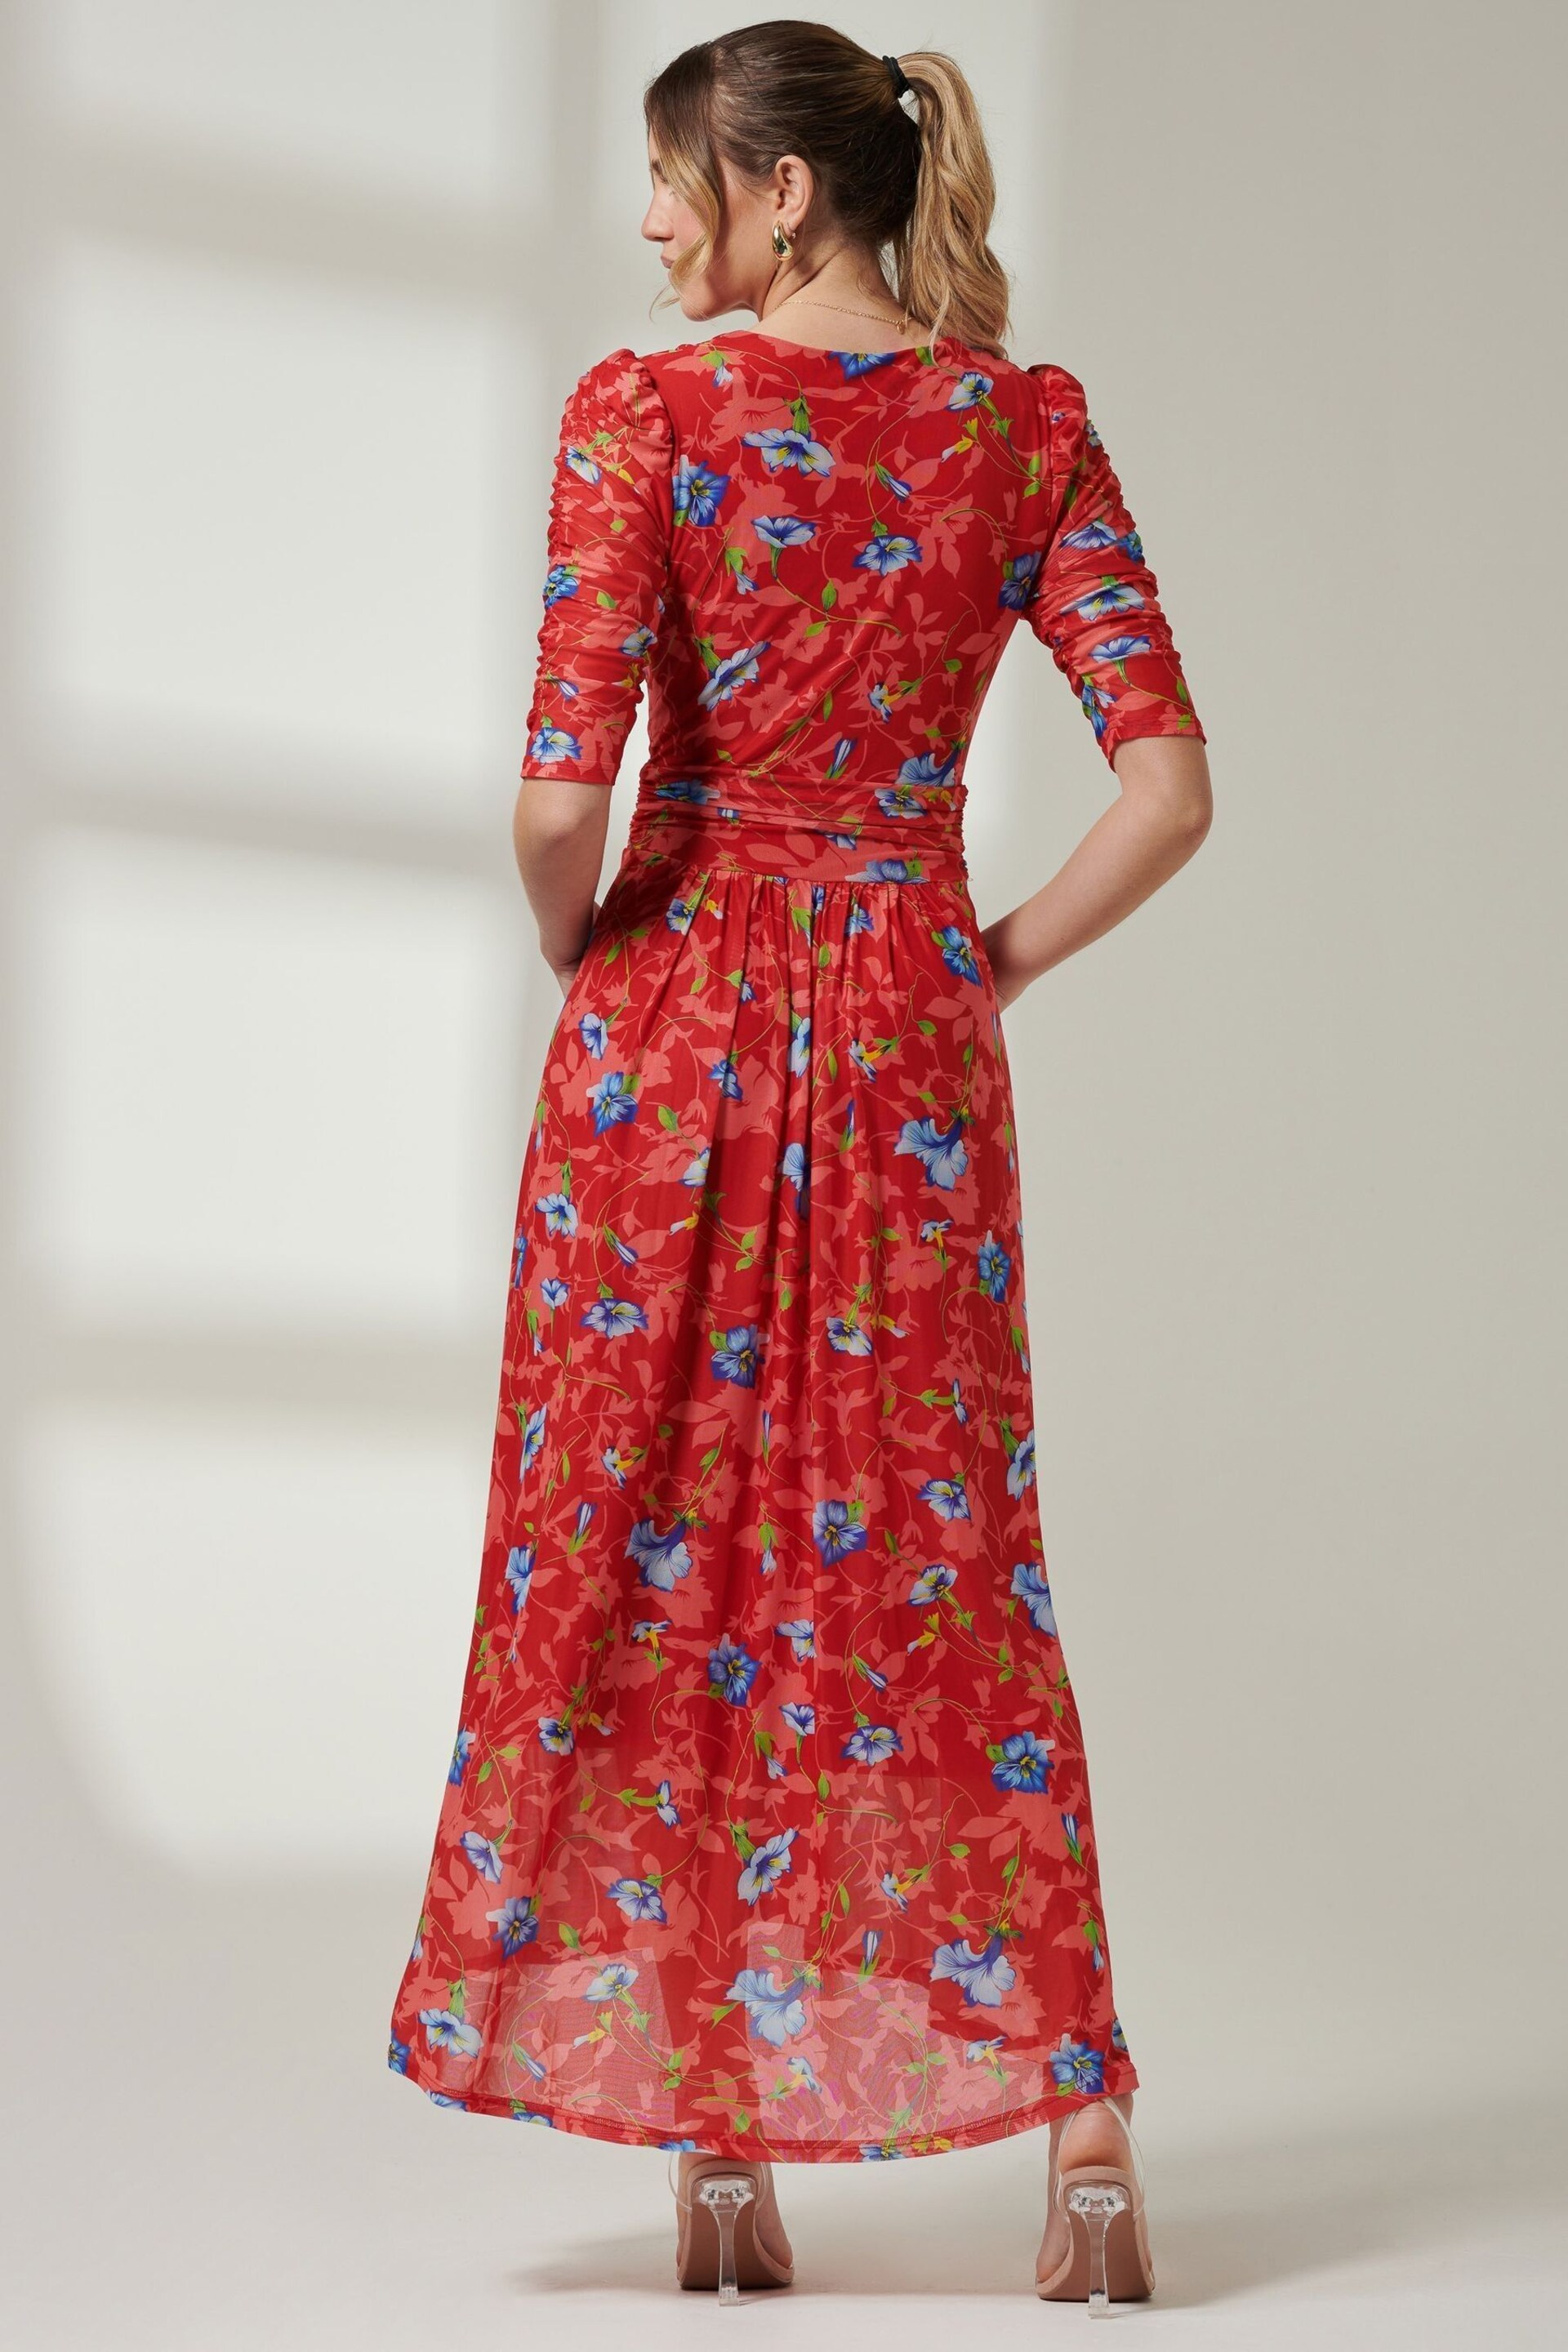 Jolie Moi Red V-Neck Short Sleeve Mesh Maxi Dress - Image 2 of 6